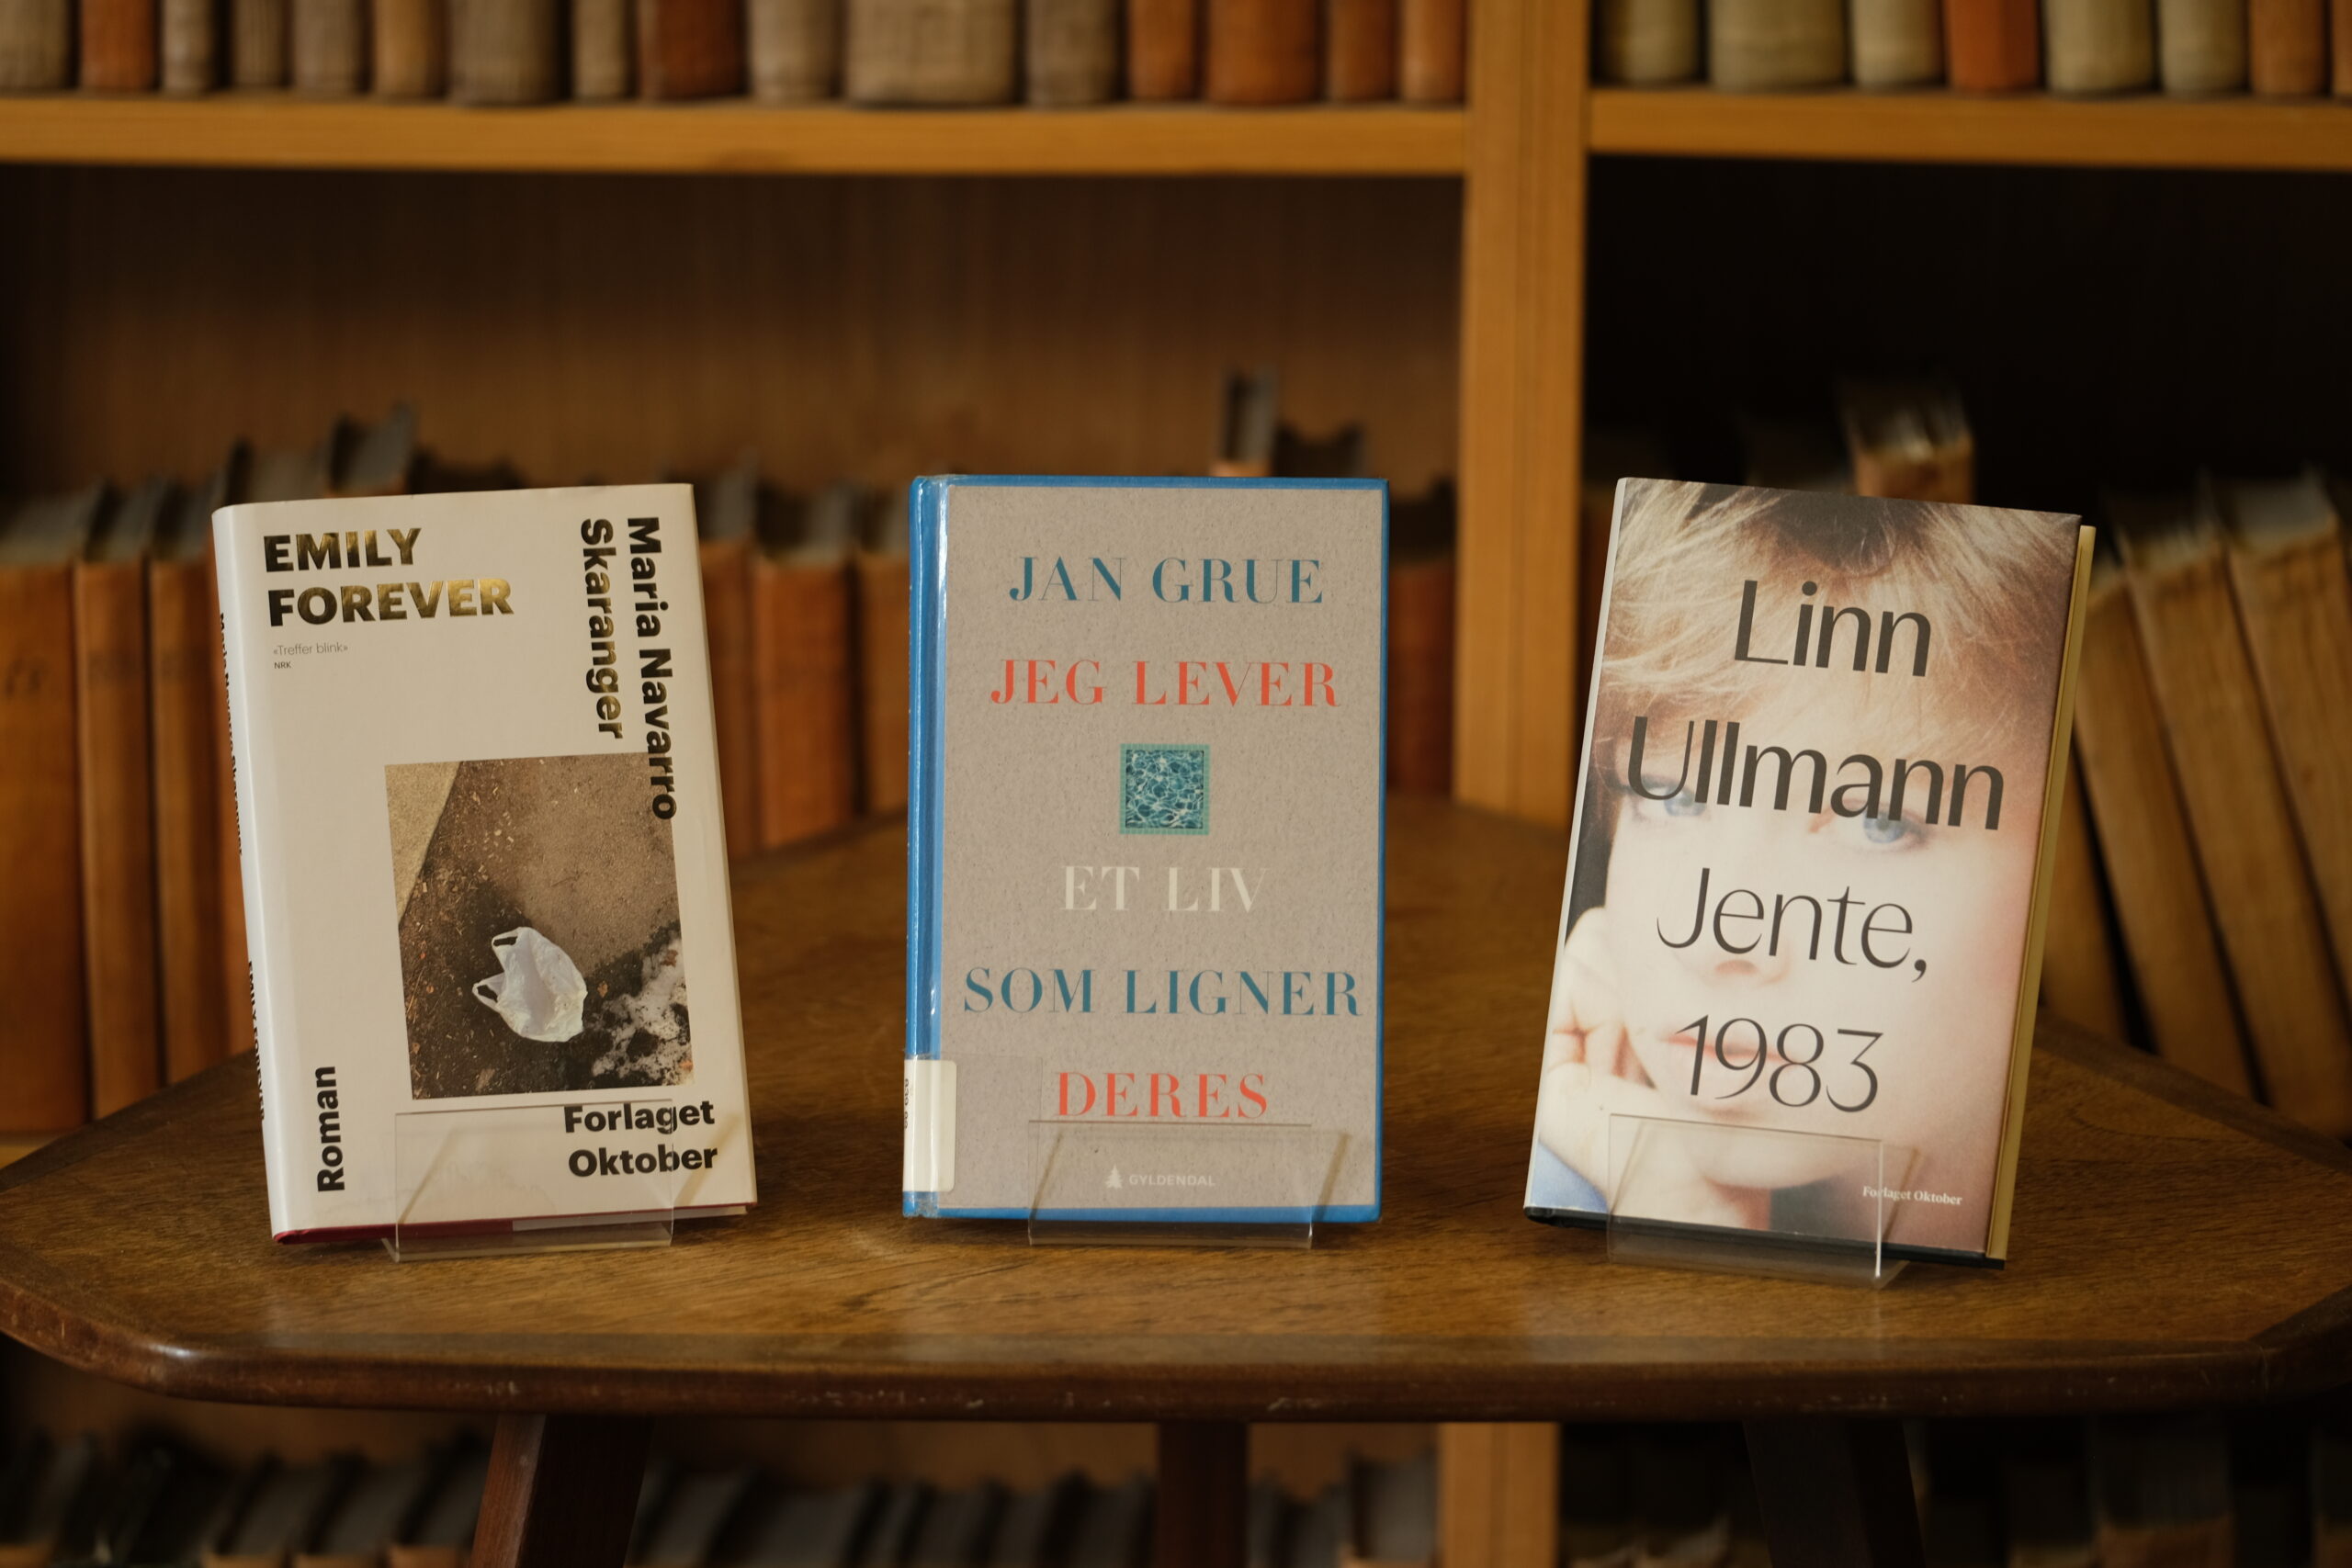 Tre bøker utstilt på en trehylle med titler av Maria Navarro Skaranger, Jan Grue og Linn Ullmann på norsk, med uskarp bakgrunn av bokhyller.